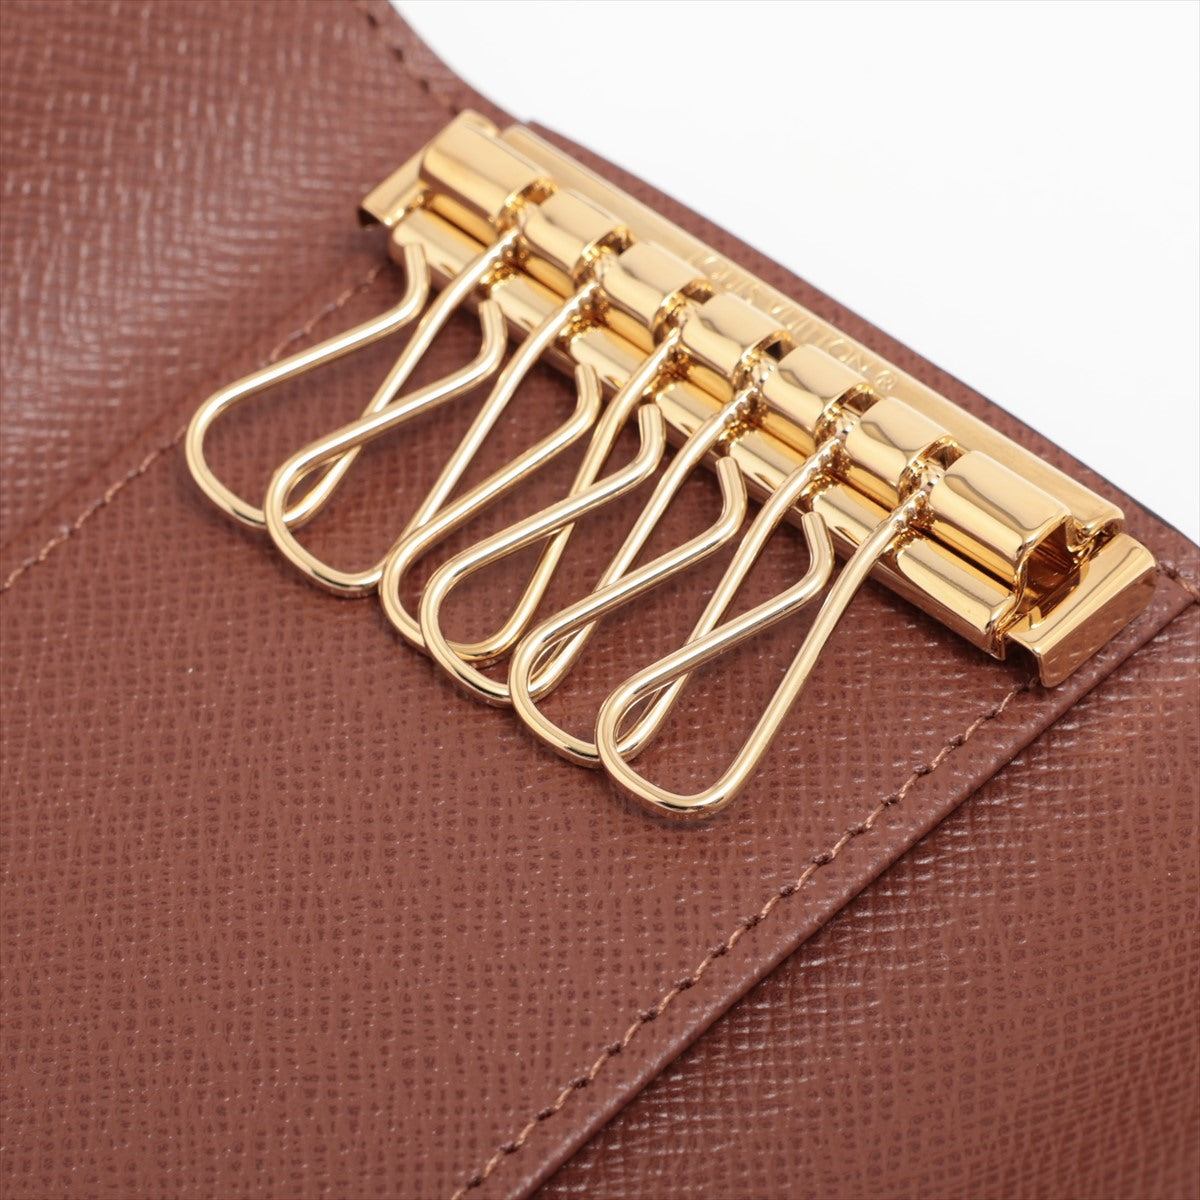 Louis Vuitton Monogram Multiclés 6 M62630 Brown Key Case